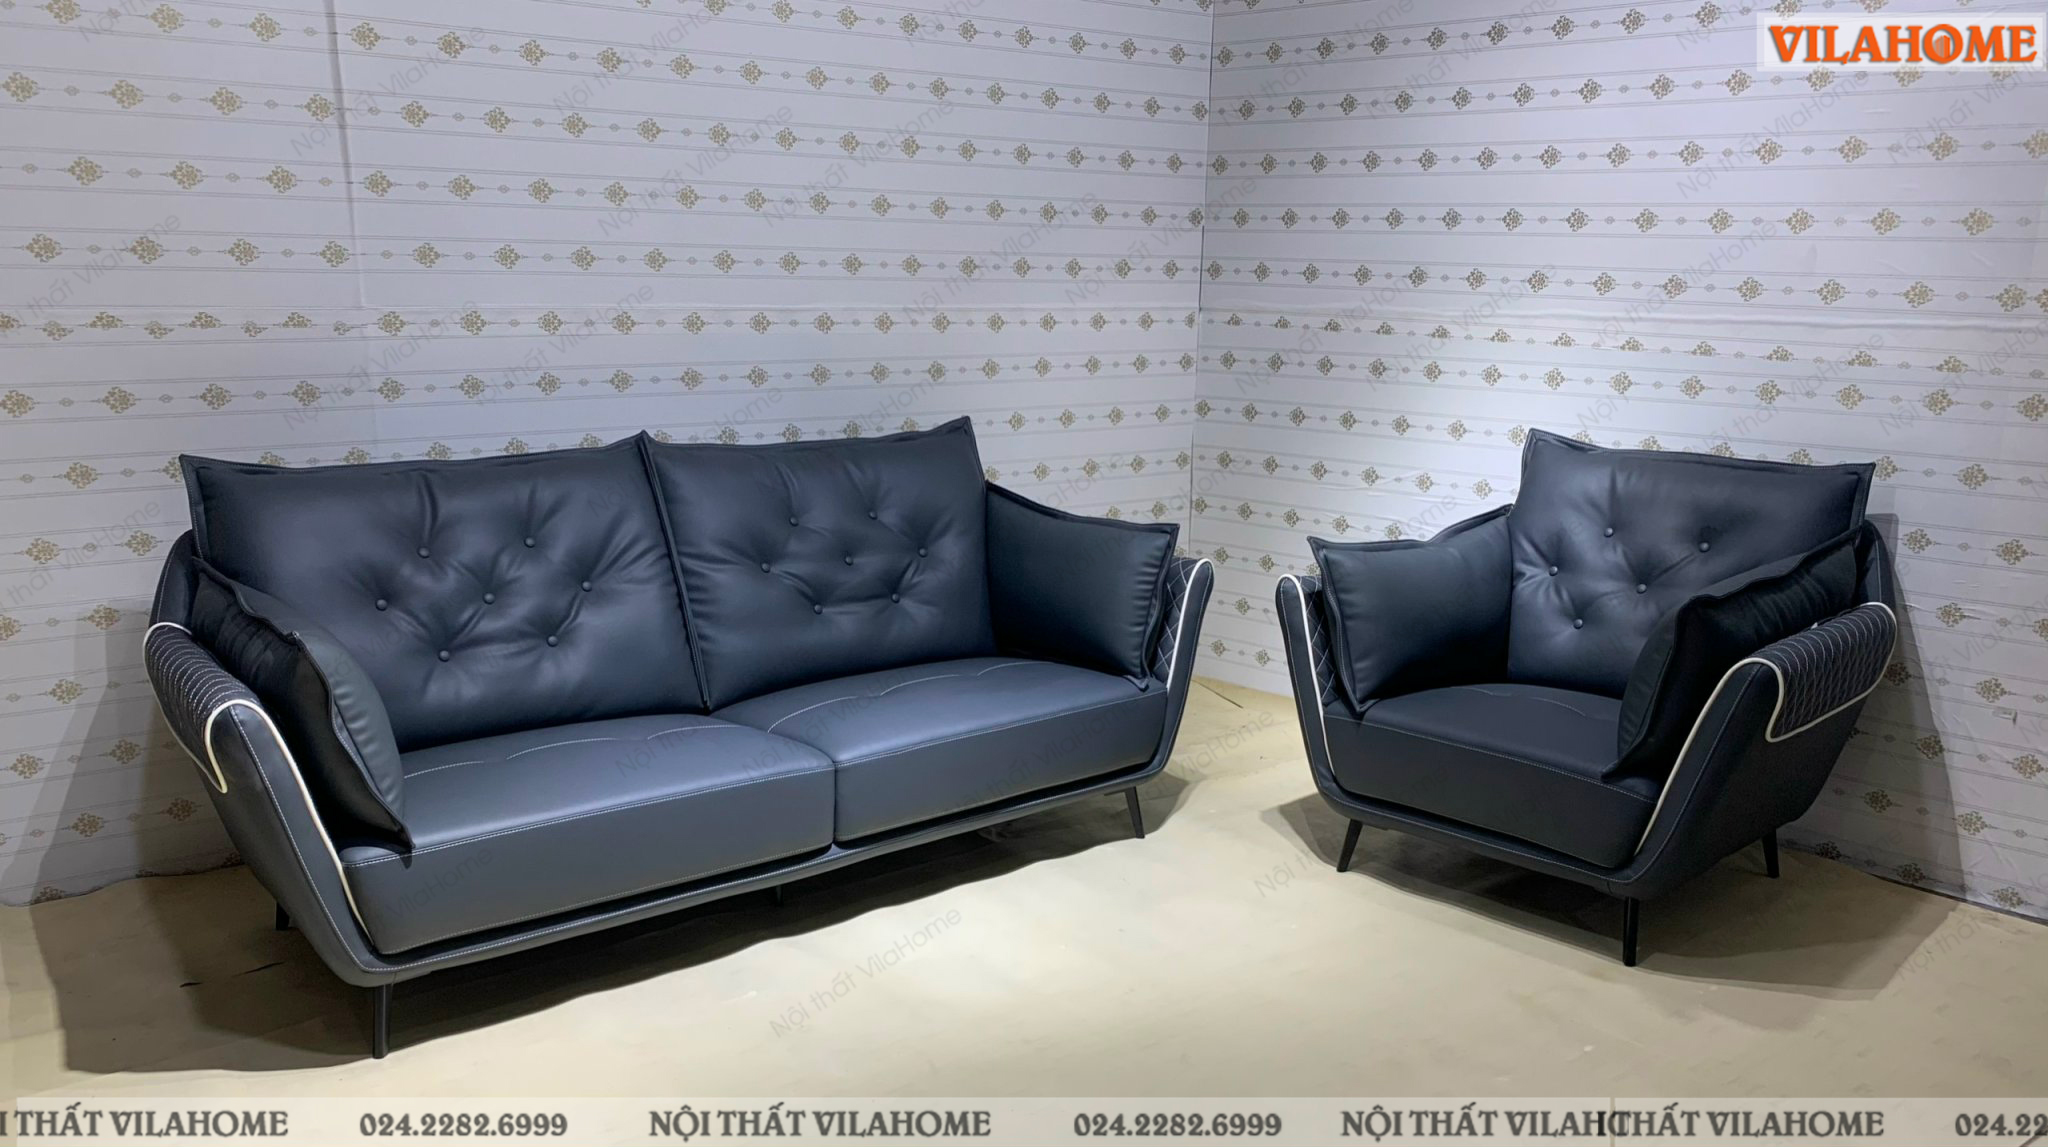 Bộ ghế sofa cao cấp cho phòng khách màu xanh đen cho khách hàng 